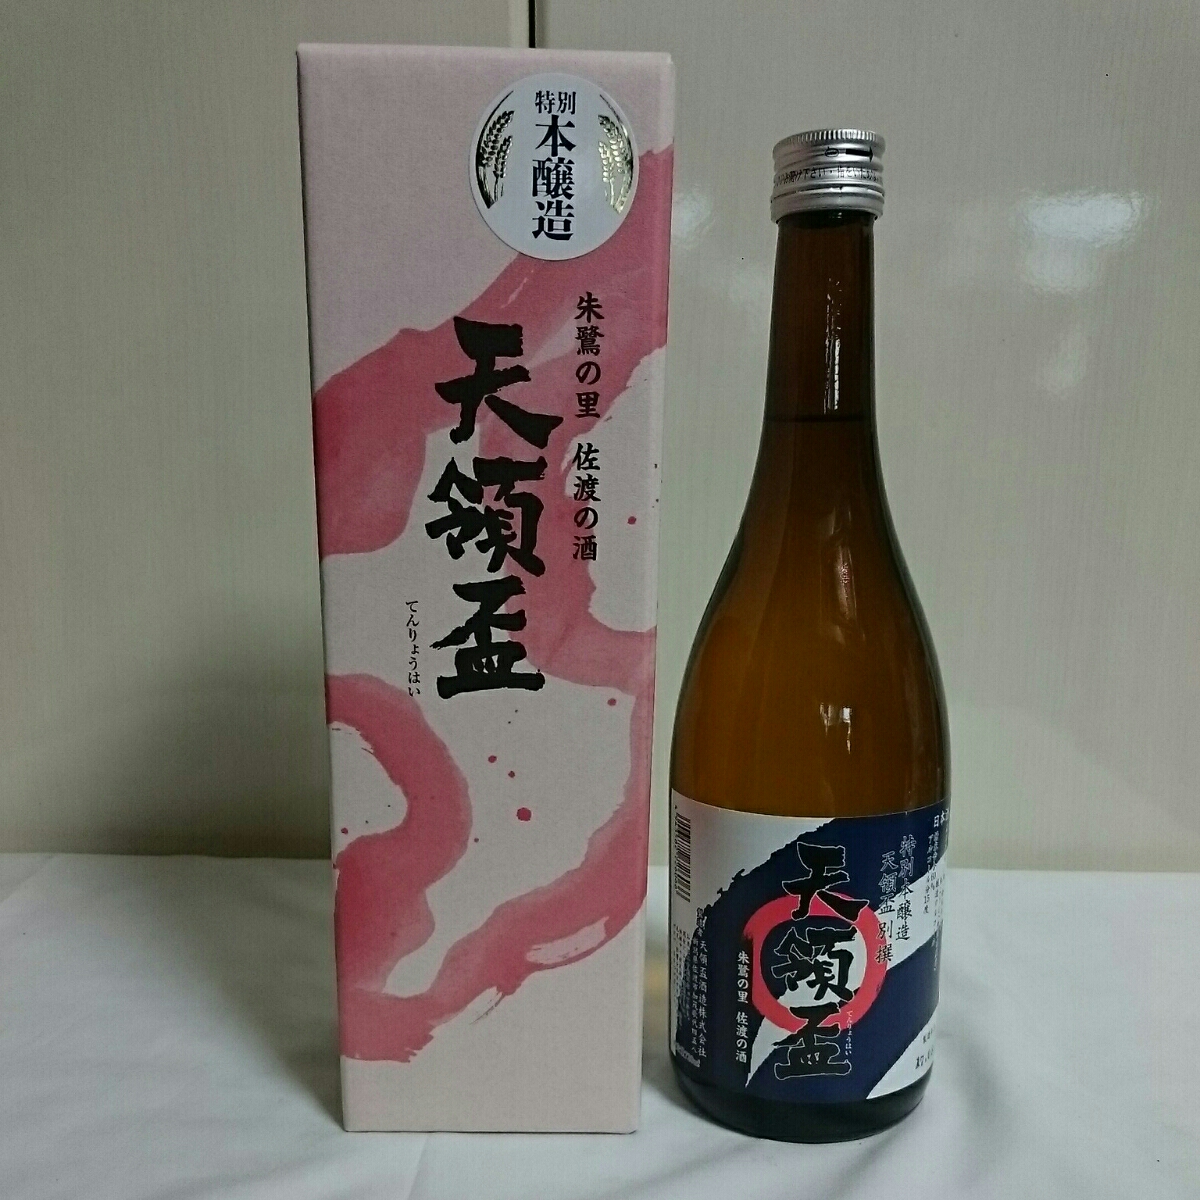 日本酒 天領盃 別撰 特別本醸造 720ml 製造年月17,08 朱鷺の里 佐渡の酒